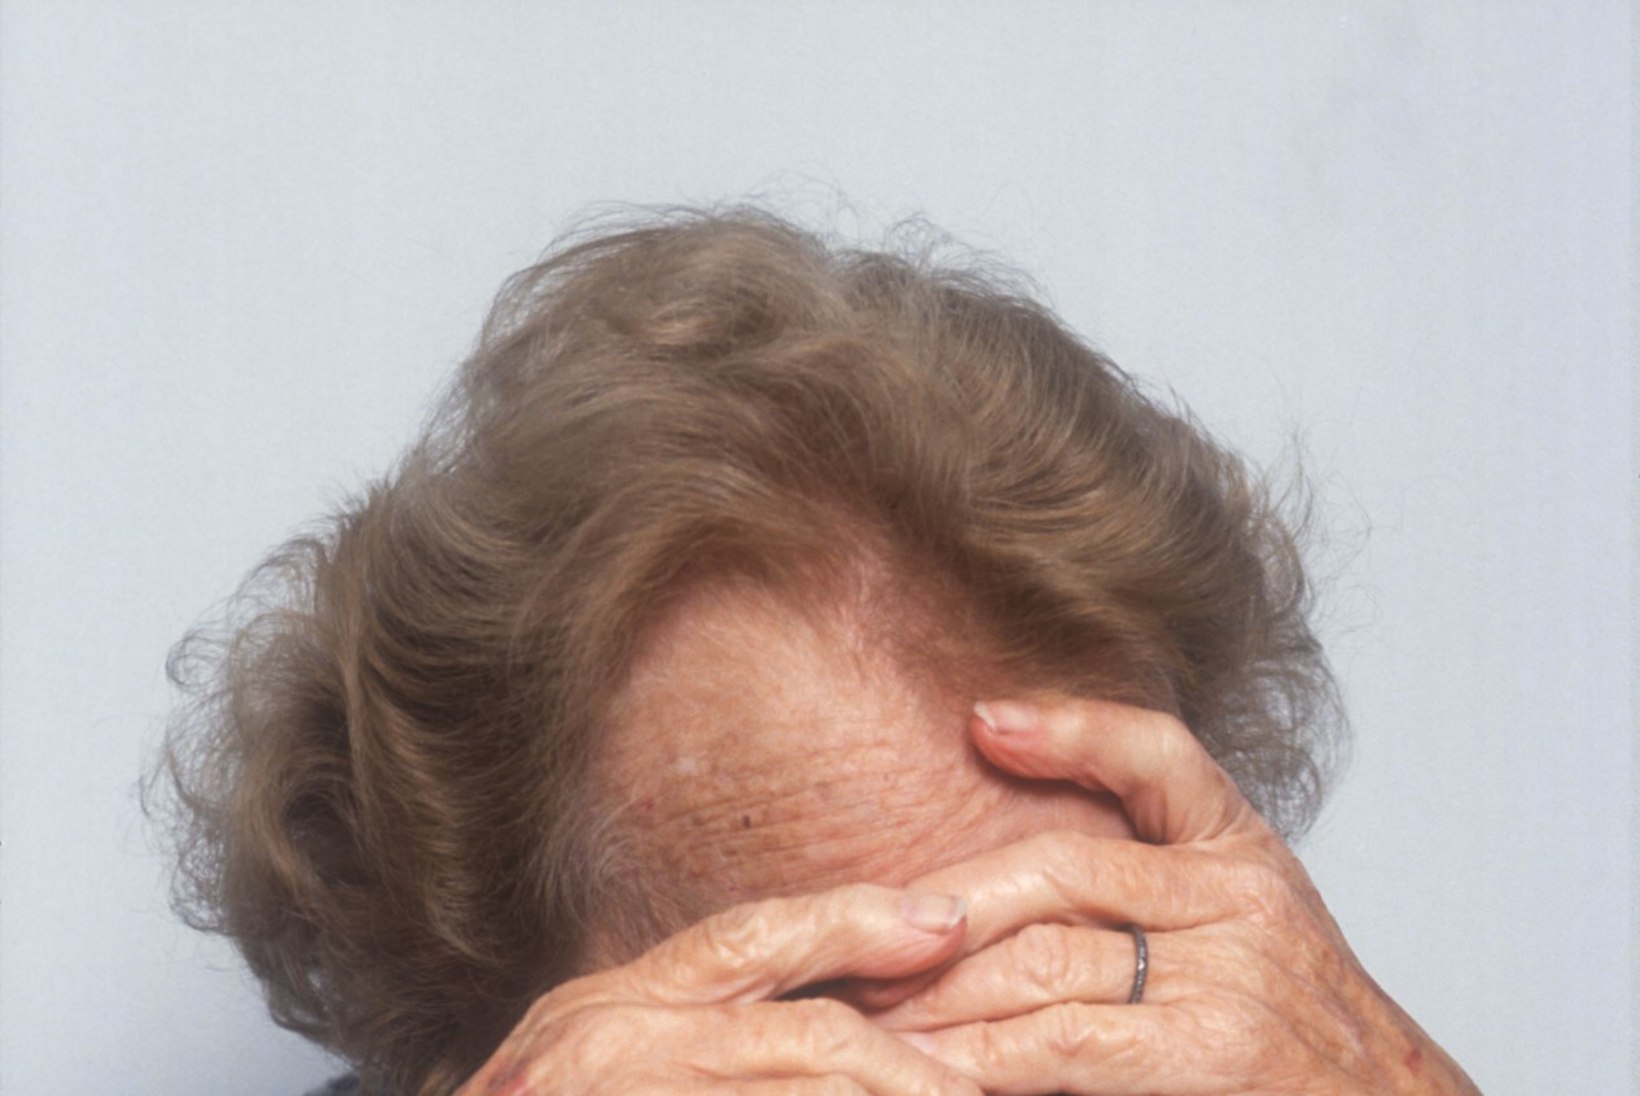 Kas Parkinsoni tõbi ja nahk on omavahel seotud? Eesti teadlased otsivad uusi diagnoosimeetodeid